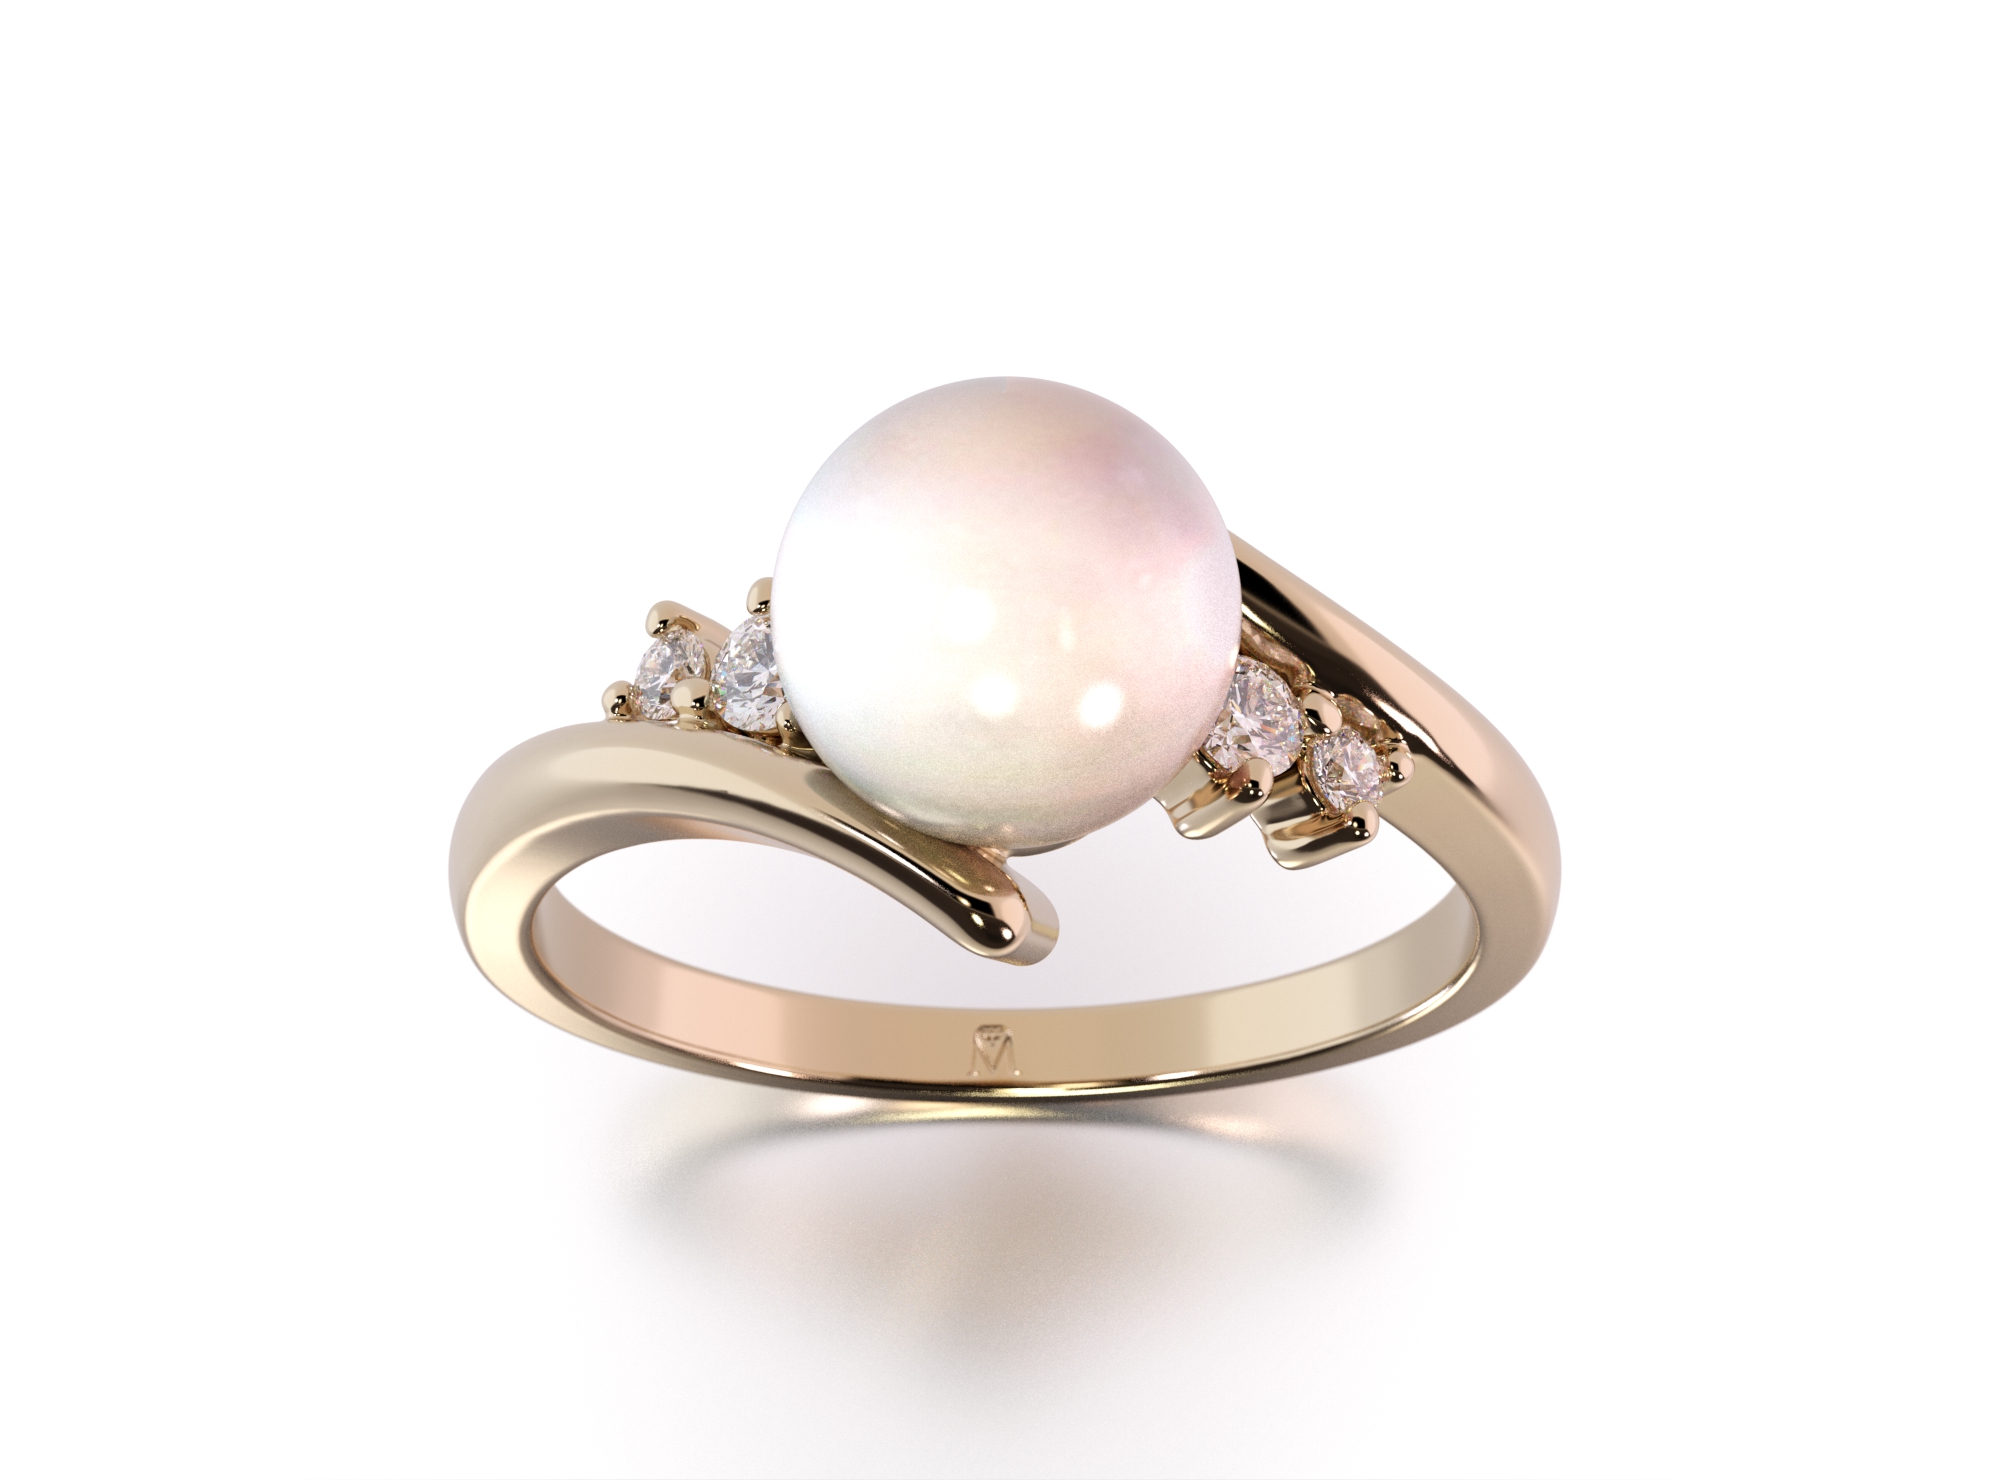 Cudowny pierścionek z perłą i diamentami w próbie złota 585 - widok z góry pod kątem